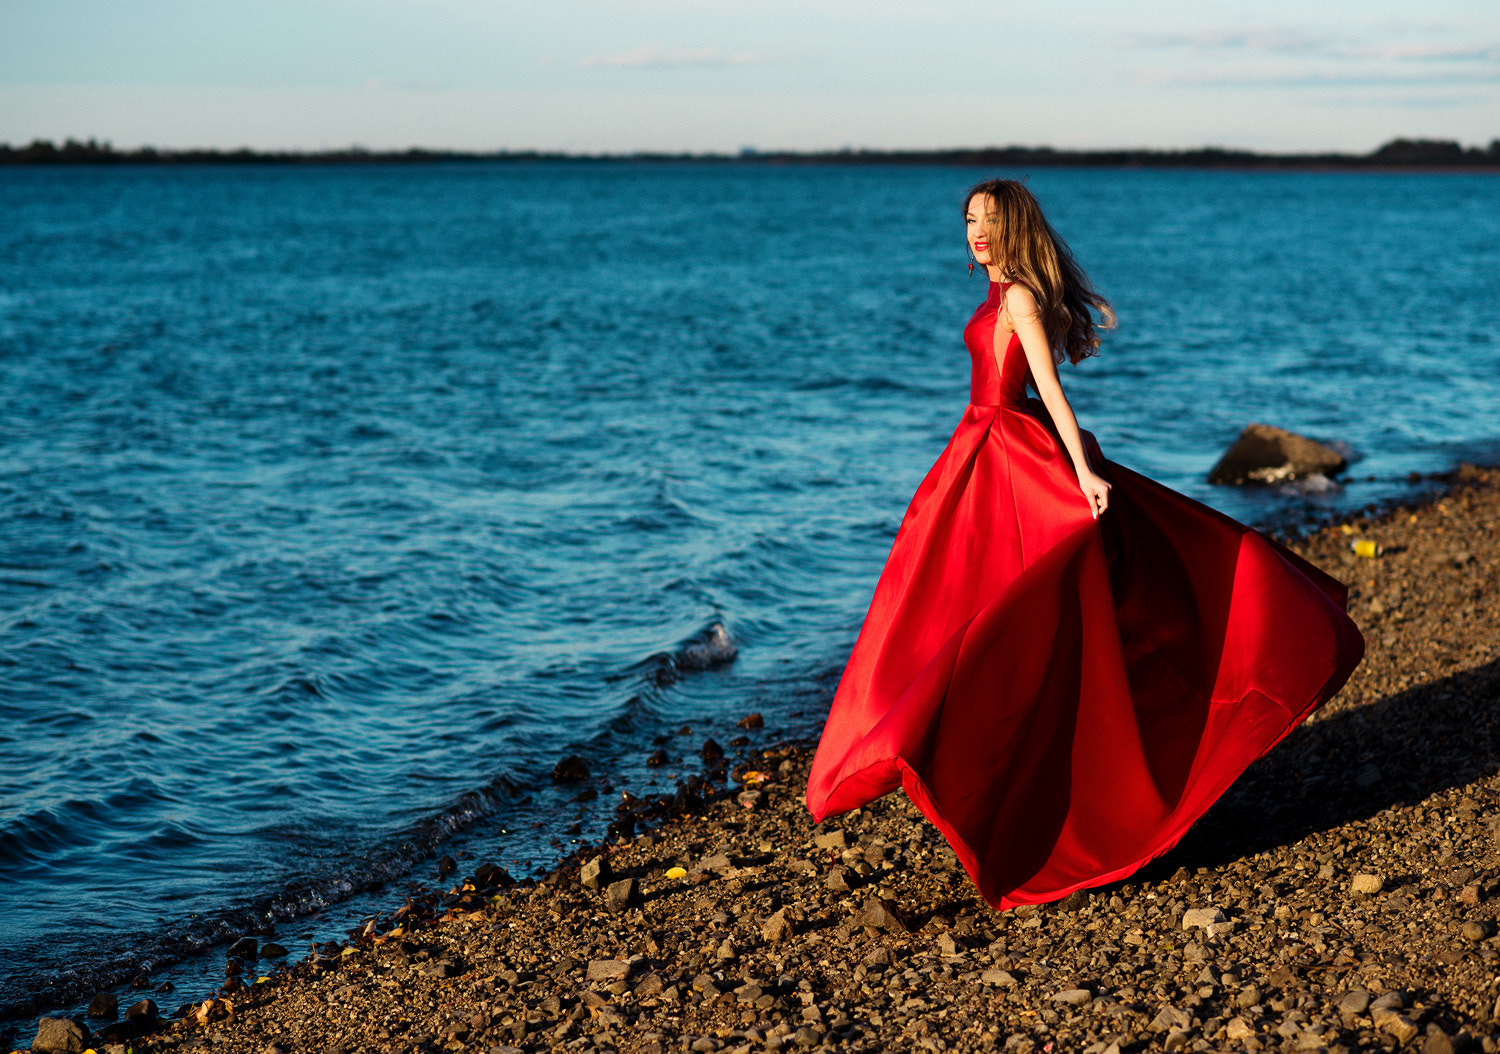 Gene Oryx Women Model Women Outdoors Red Dress 500px 1500x1054